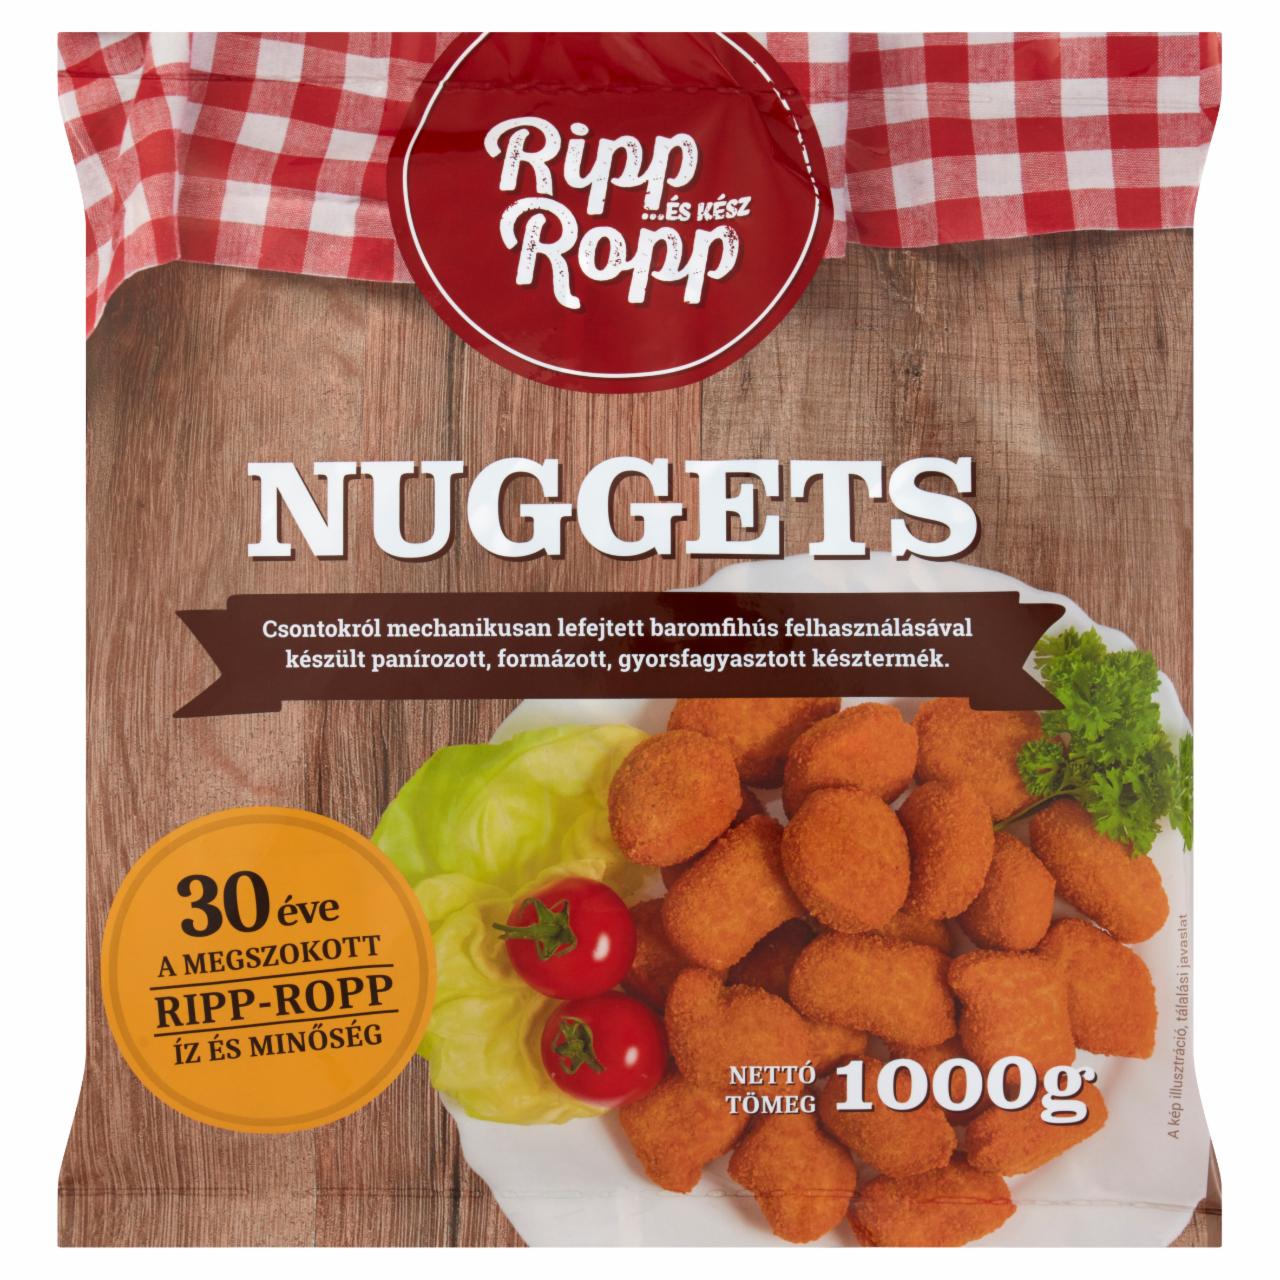 Képek - Ripp-Ropp gyorsfagyasztott nuggets 1000 g